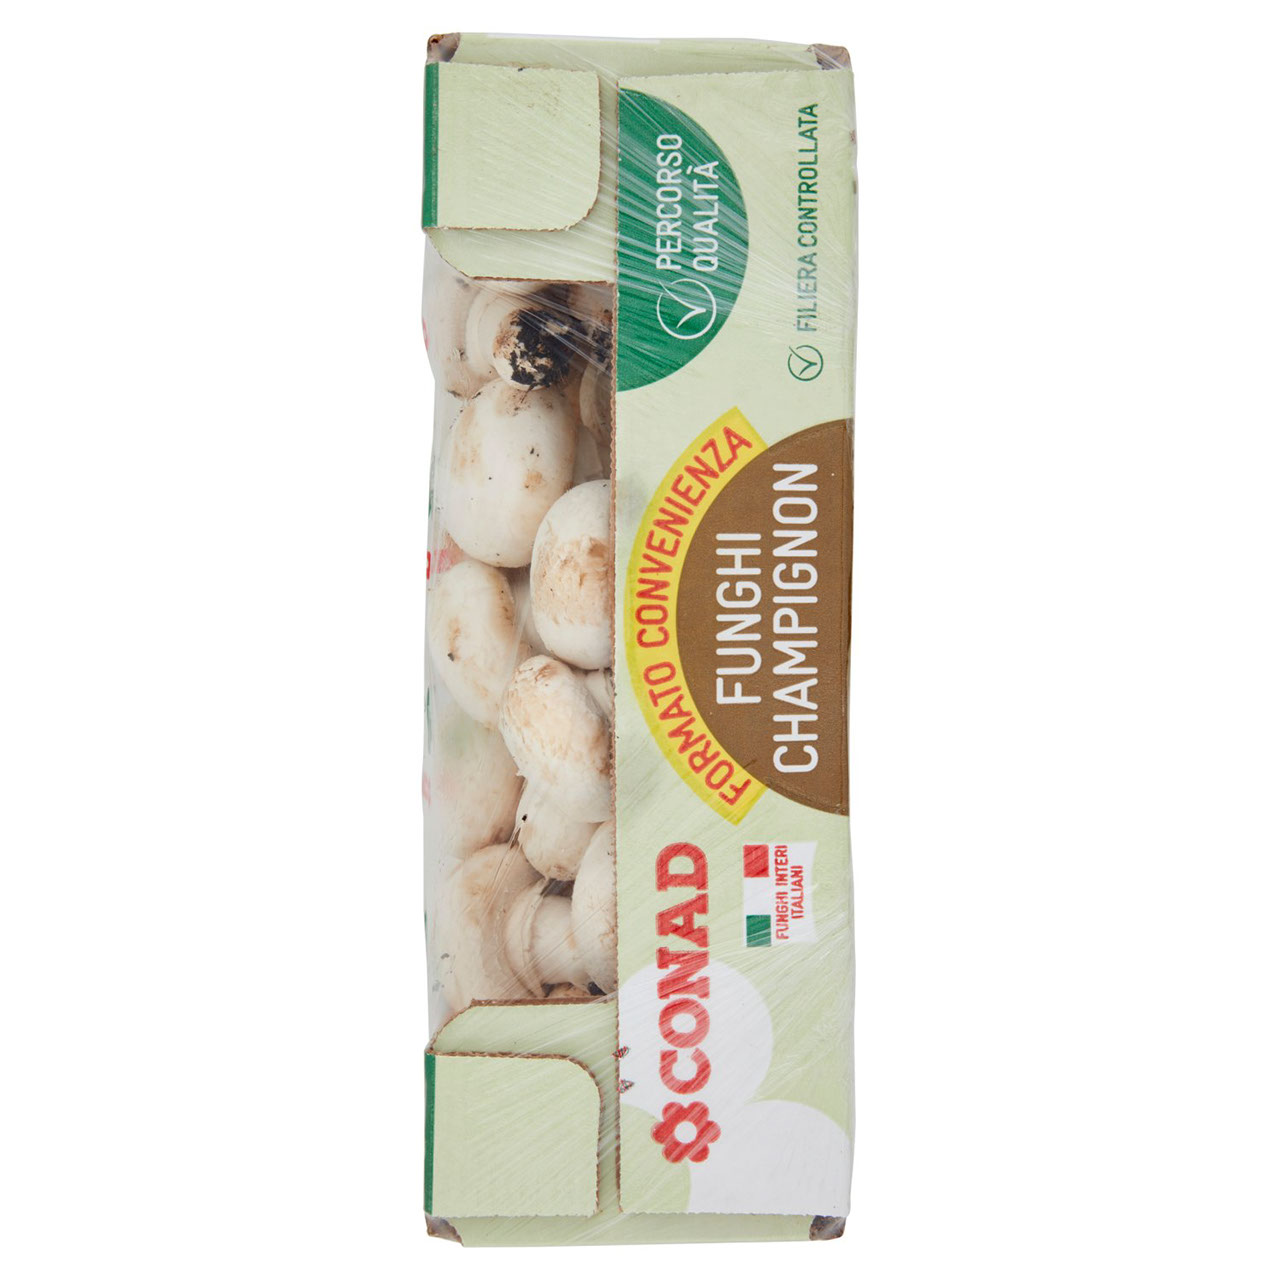 Funghi Champignon Bianco Conad in vendita online